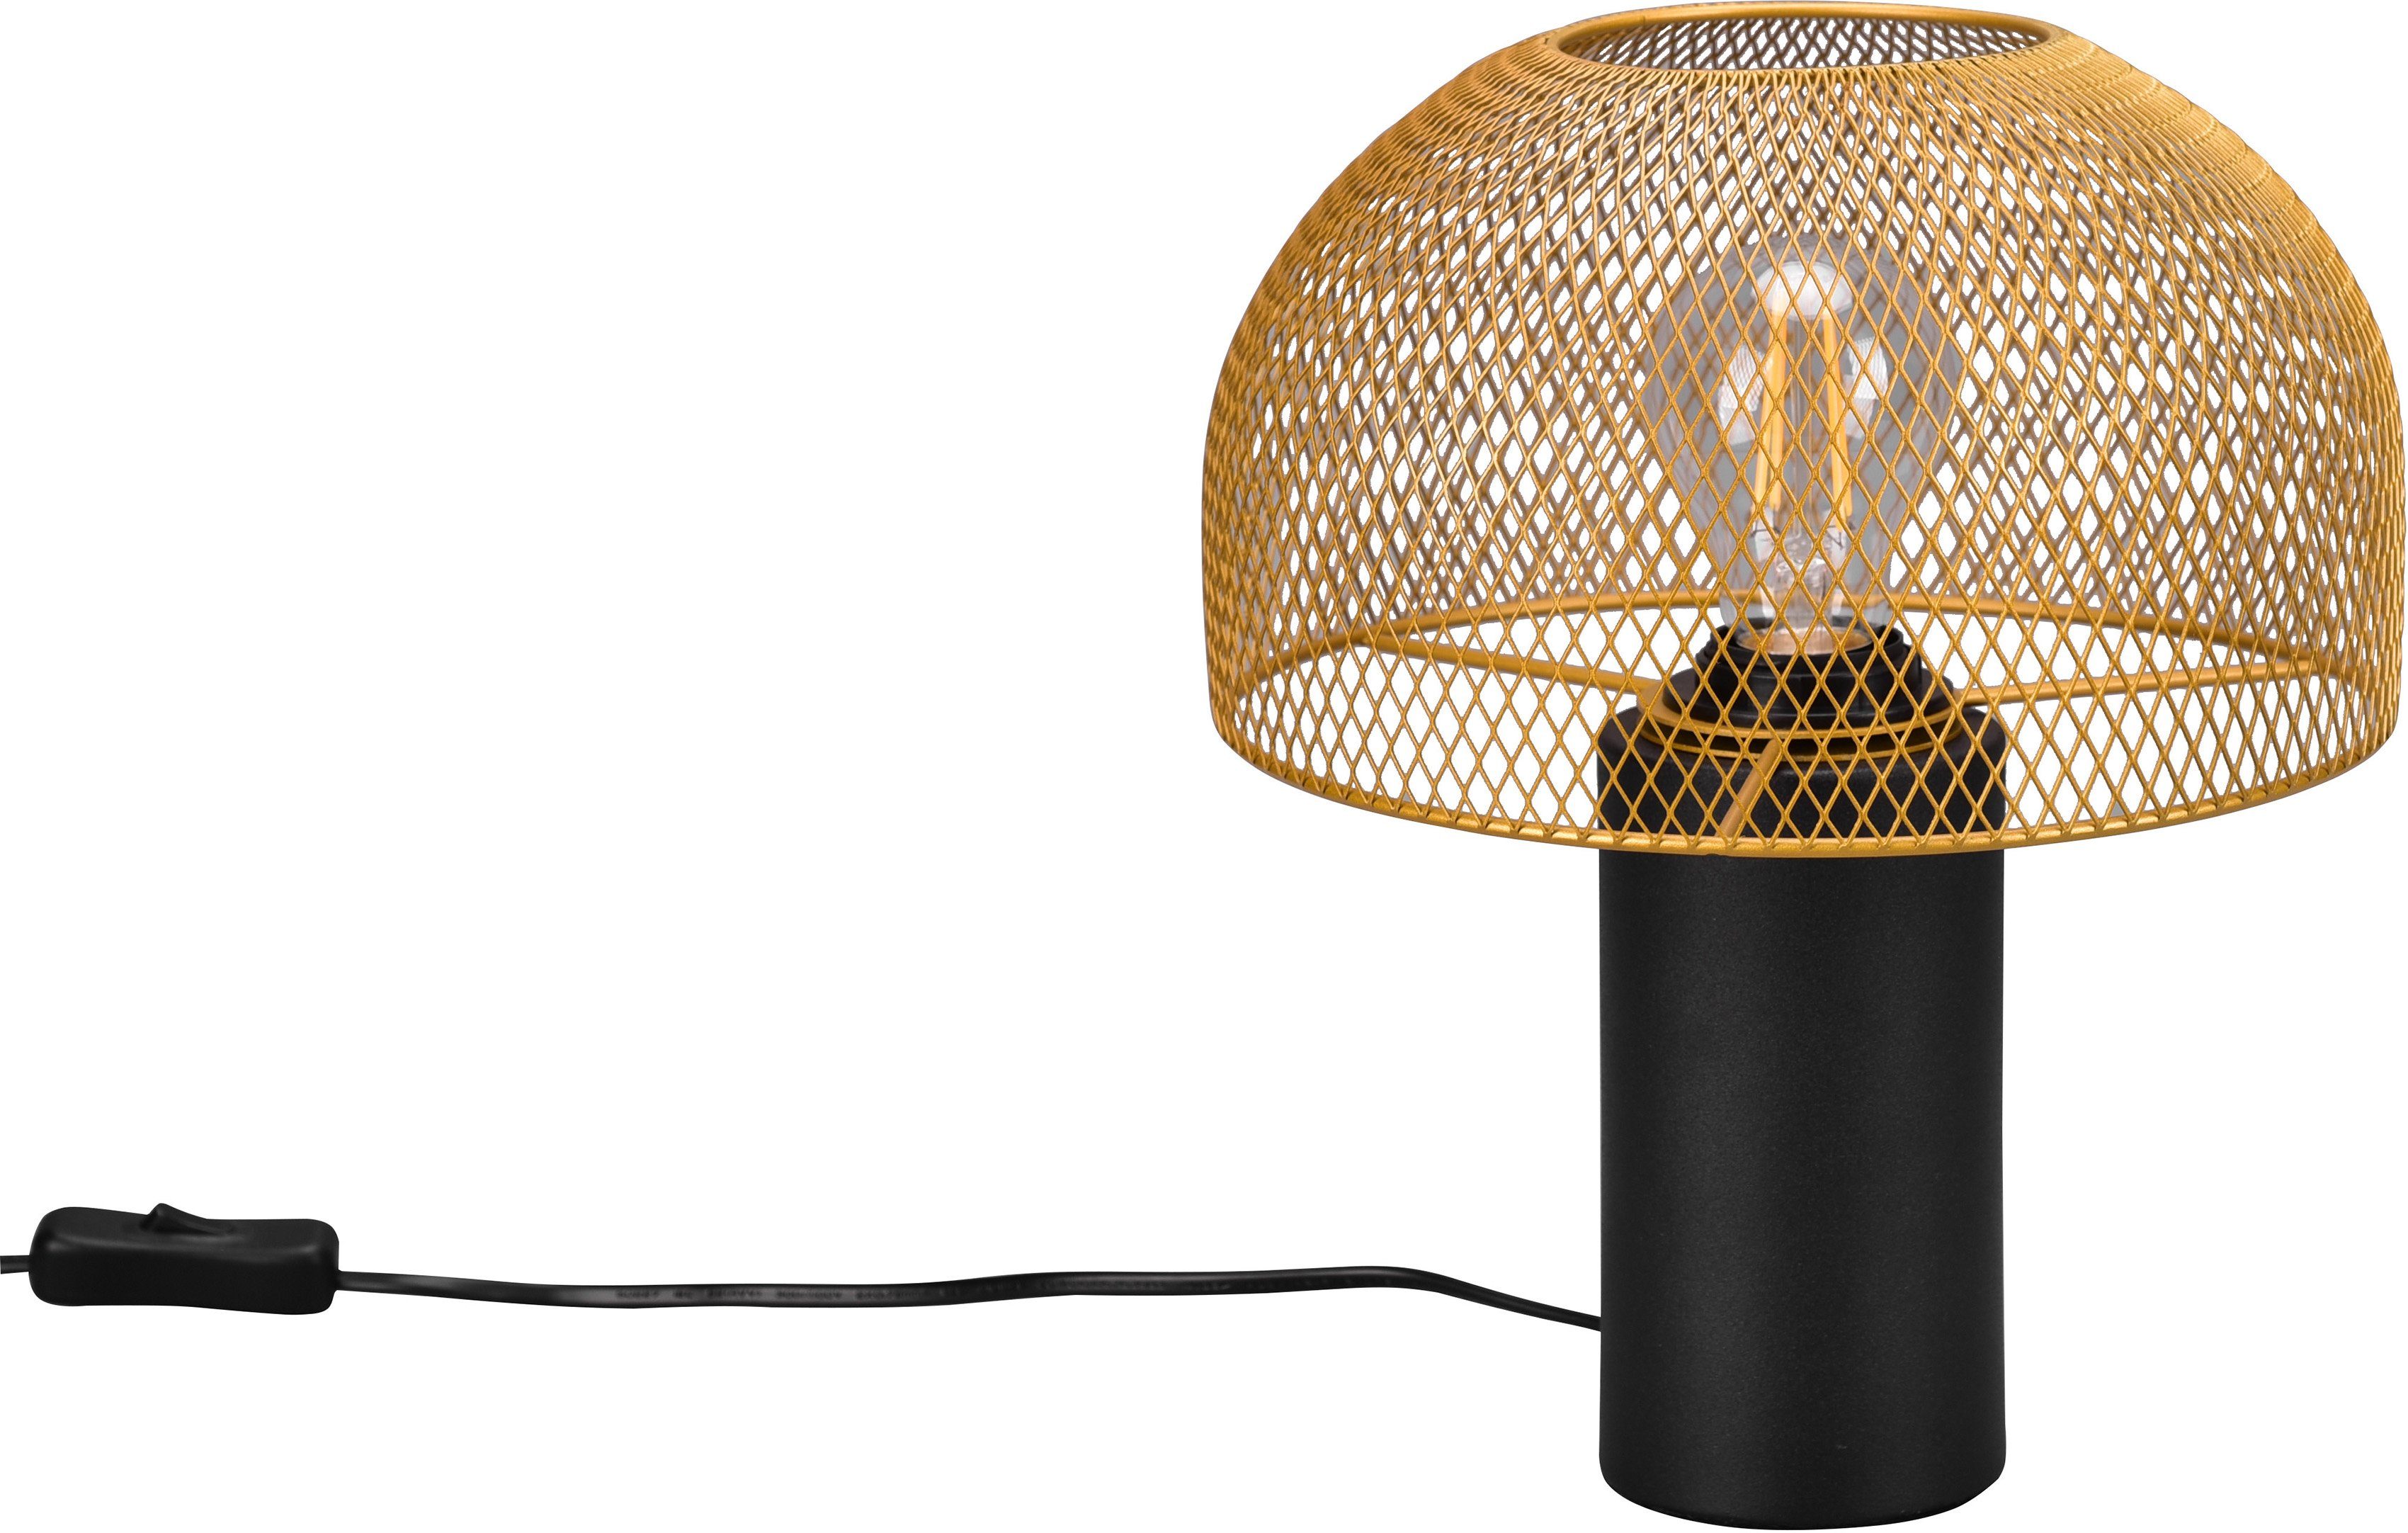 Pilzlampe Tischleuchte Gitter schwarz/goldfarben Leuchtmittel, ohne Schreibtischlampe Elenoire, Draht Schirm Leonique Tischlampe